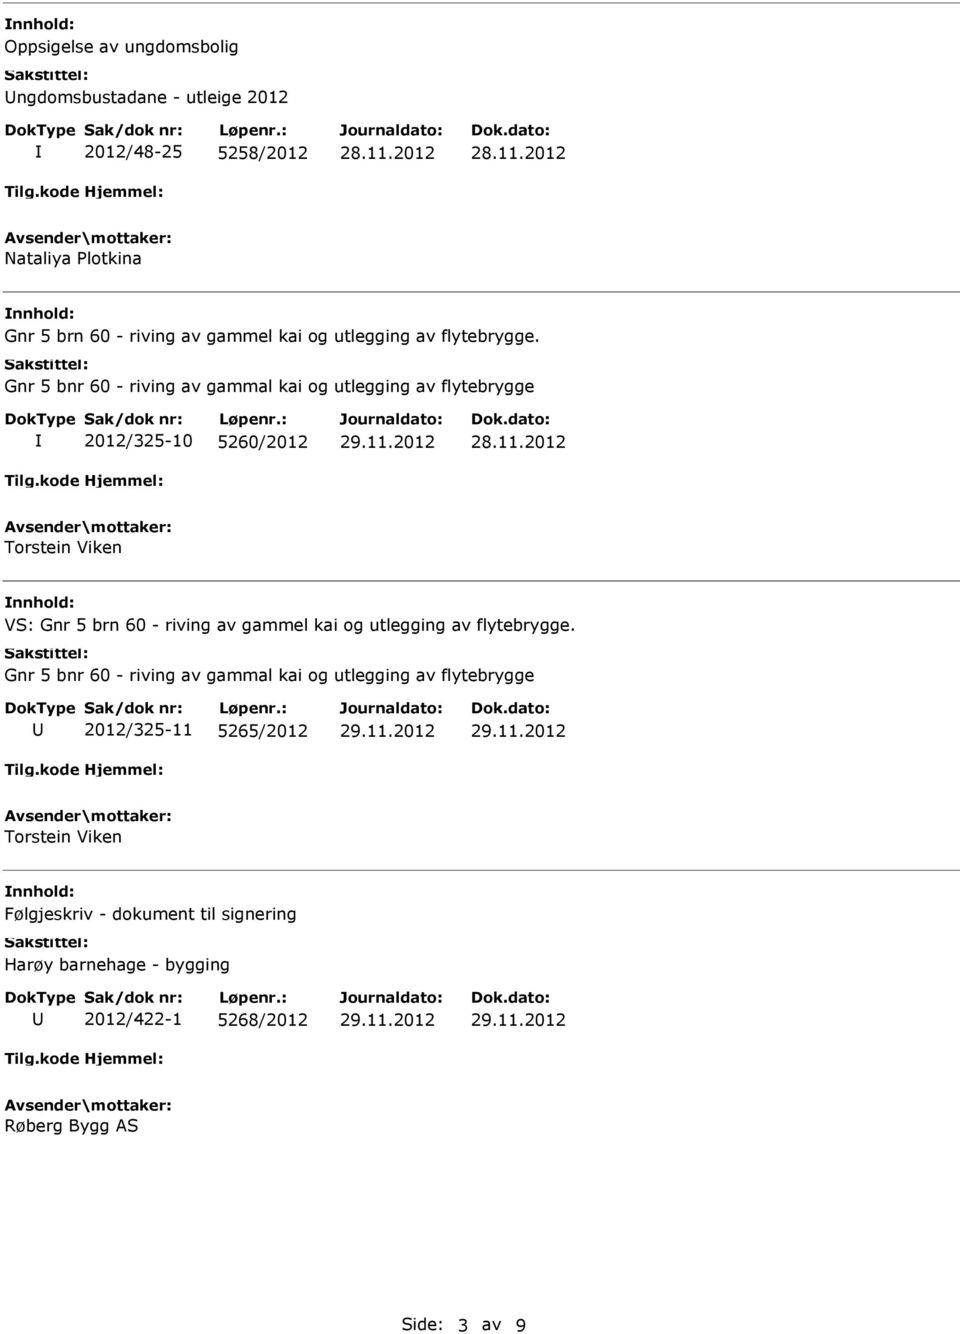 Gnr 5 bnr 60 - riving av gammal kai og utlegging av flytebrygge 2012/325-10 5260/2012 Torstein Viken VS: Gnr 5 brn 60 - riving av